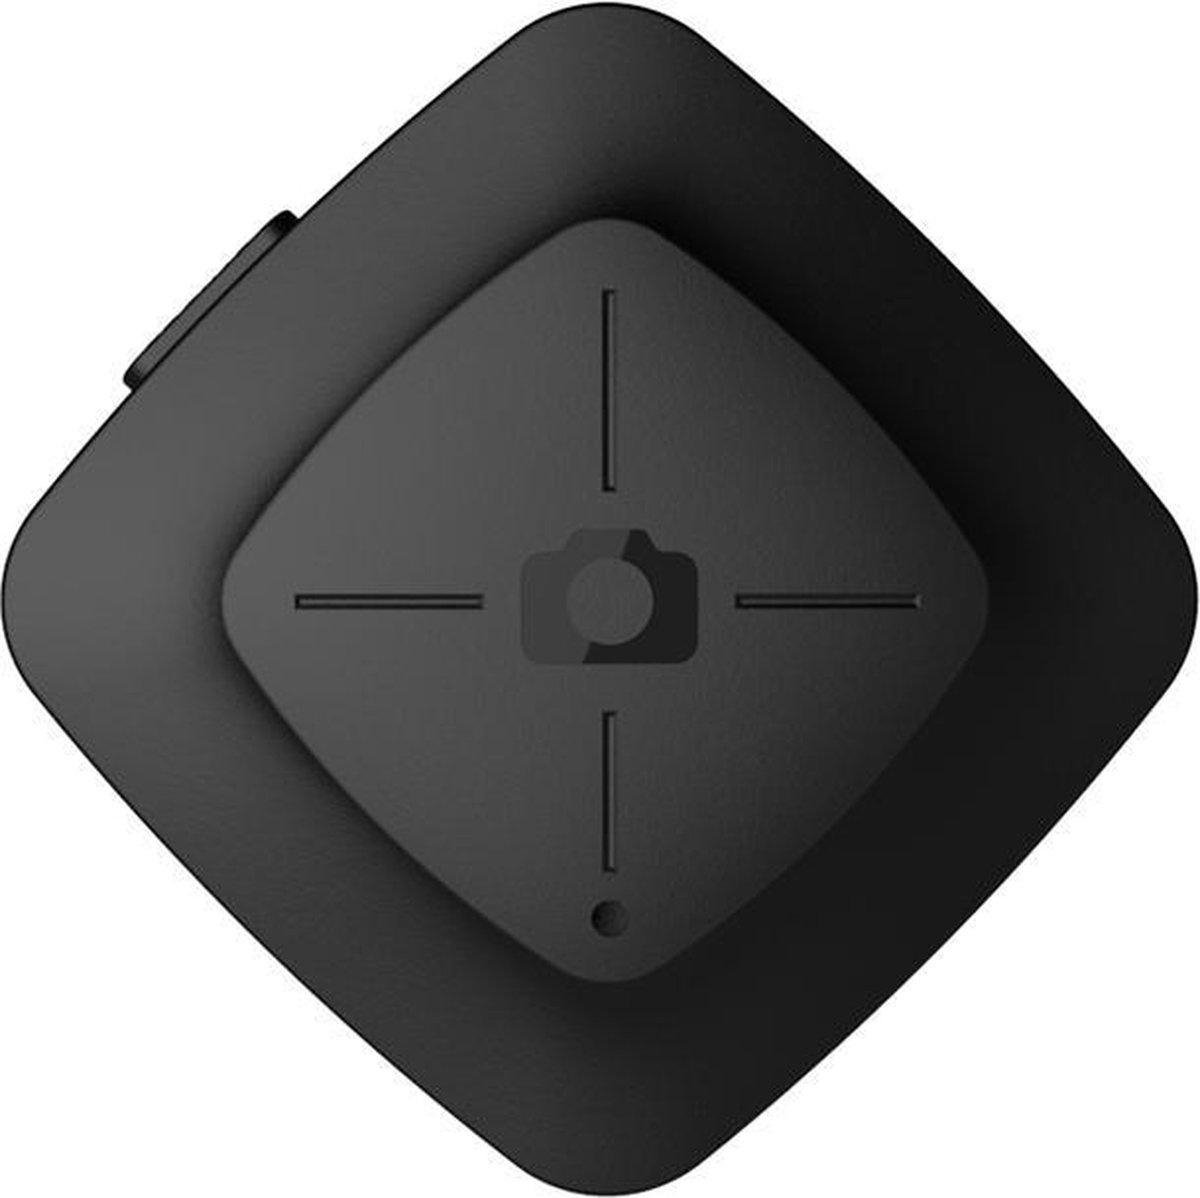 Fotopro Bluetooth remote shutter afstandsbediening voor smartphone camera BT-4 - zwart